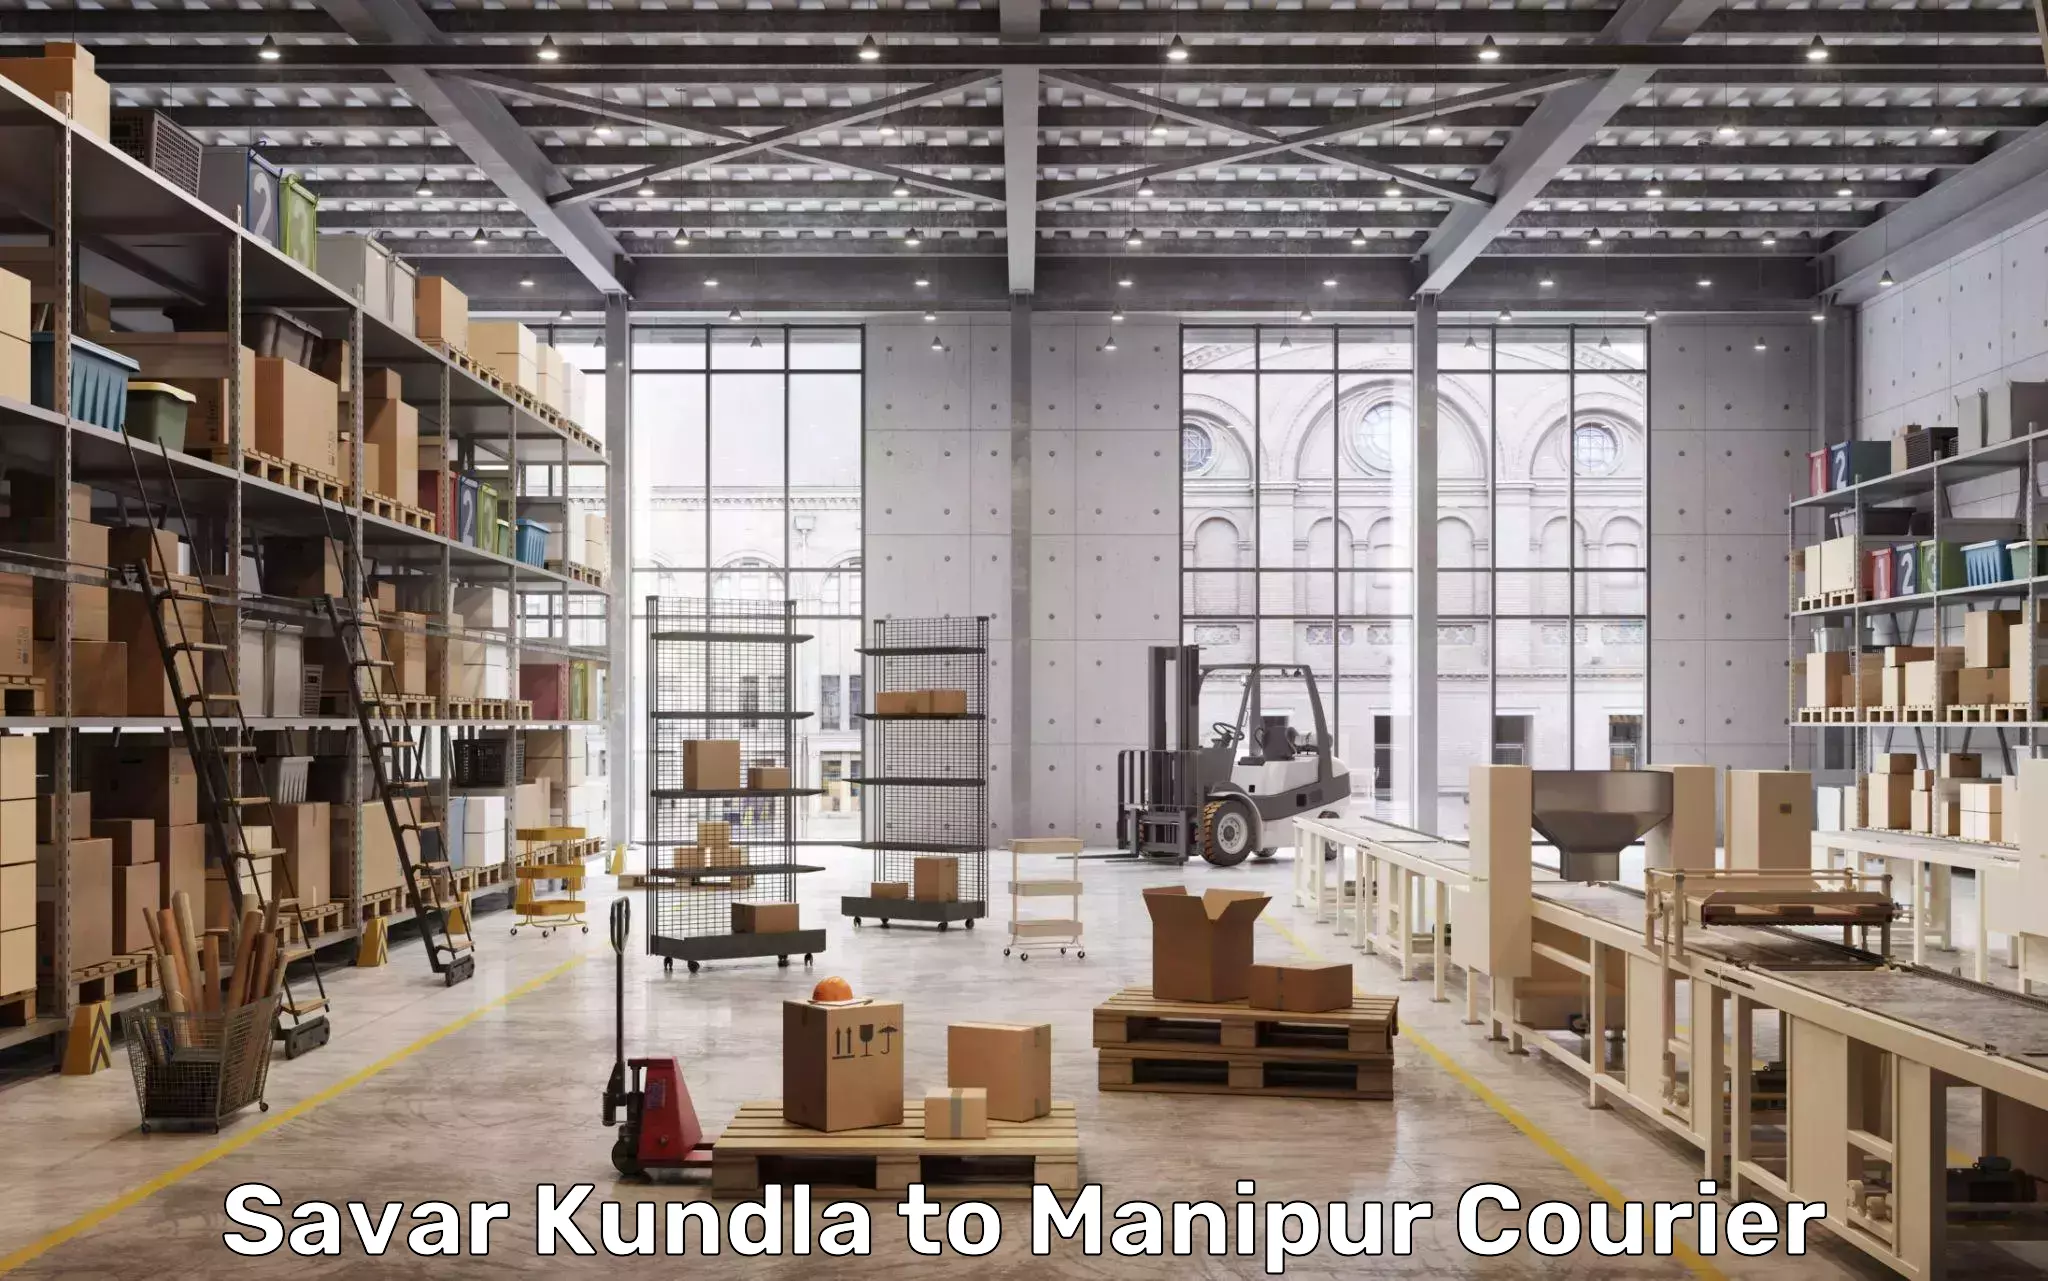 Luggage transport company Savar Kundla to Manipur